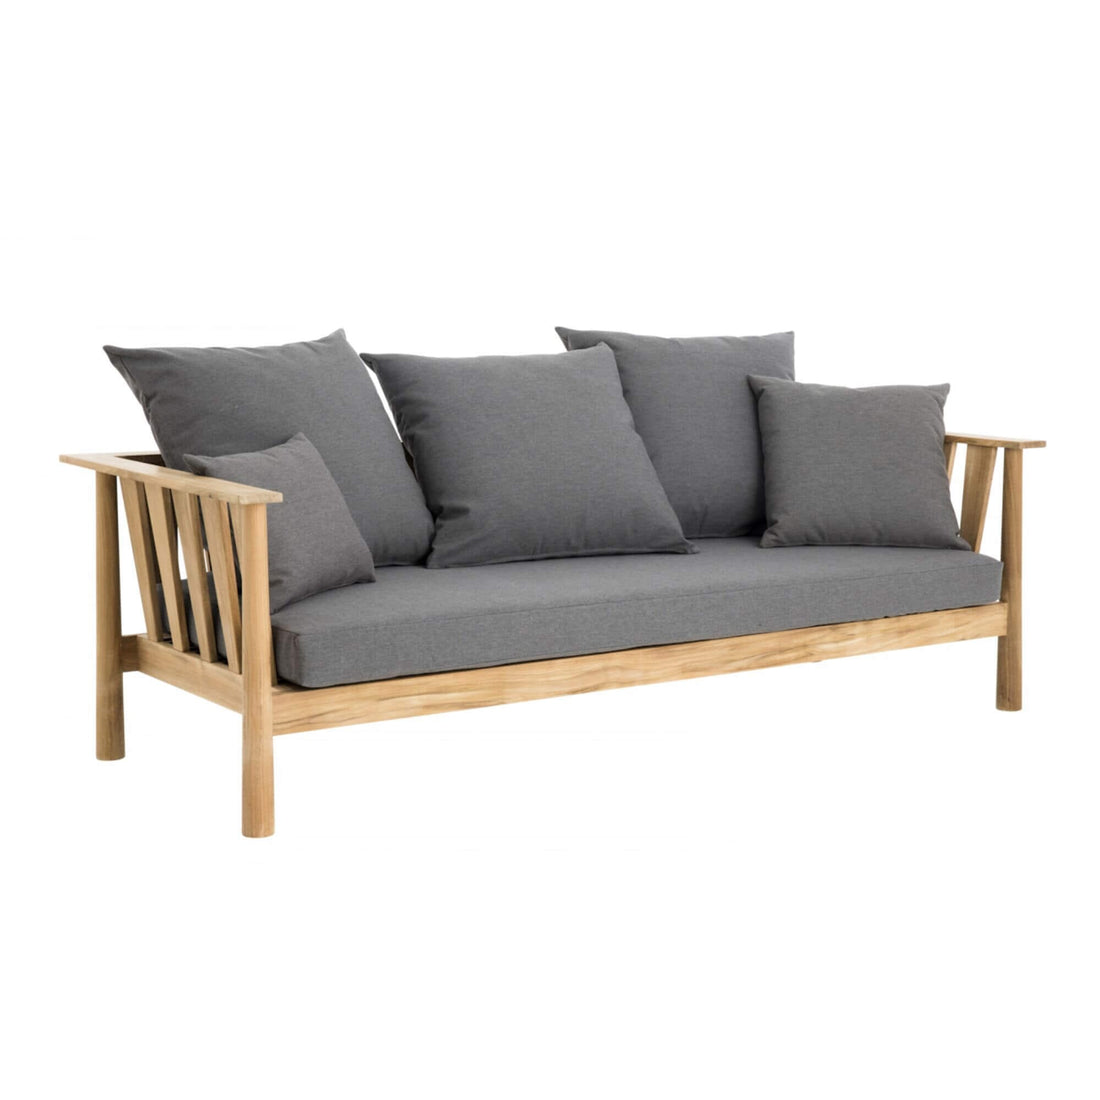 Malua Outdoor Sofa Outdoor Furniture Eco Outdoor 